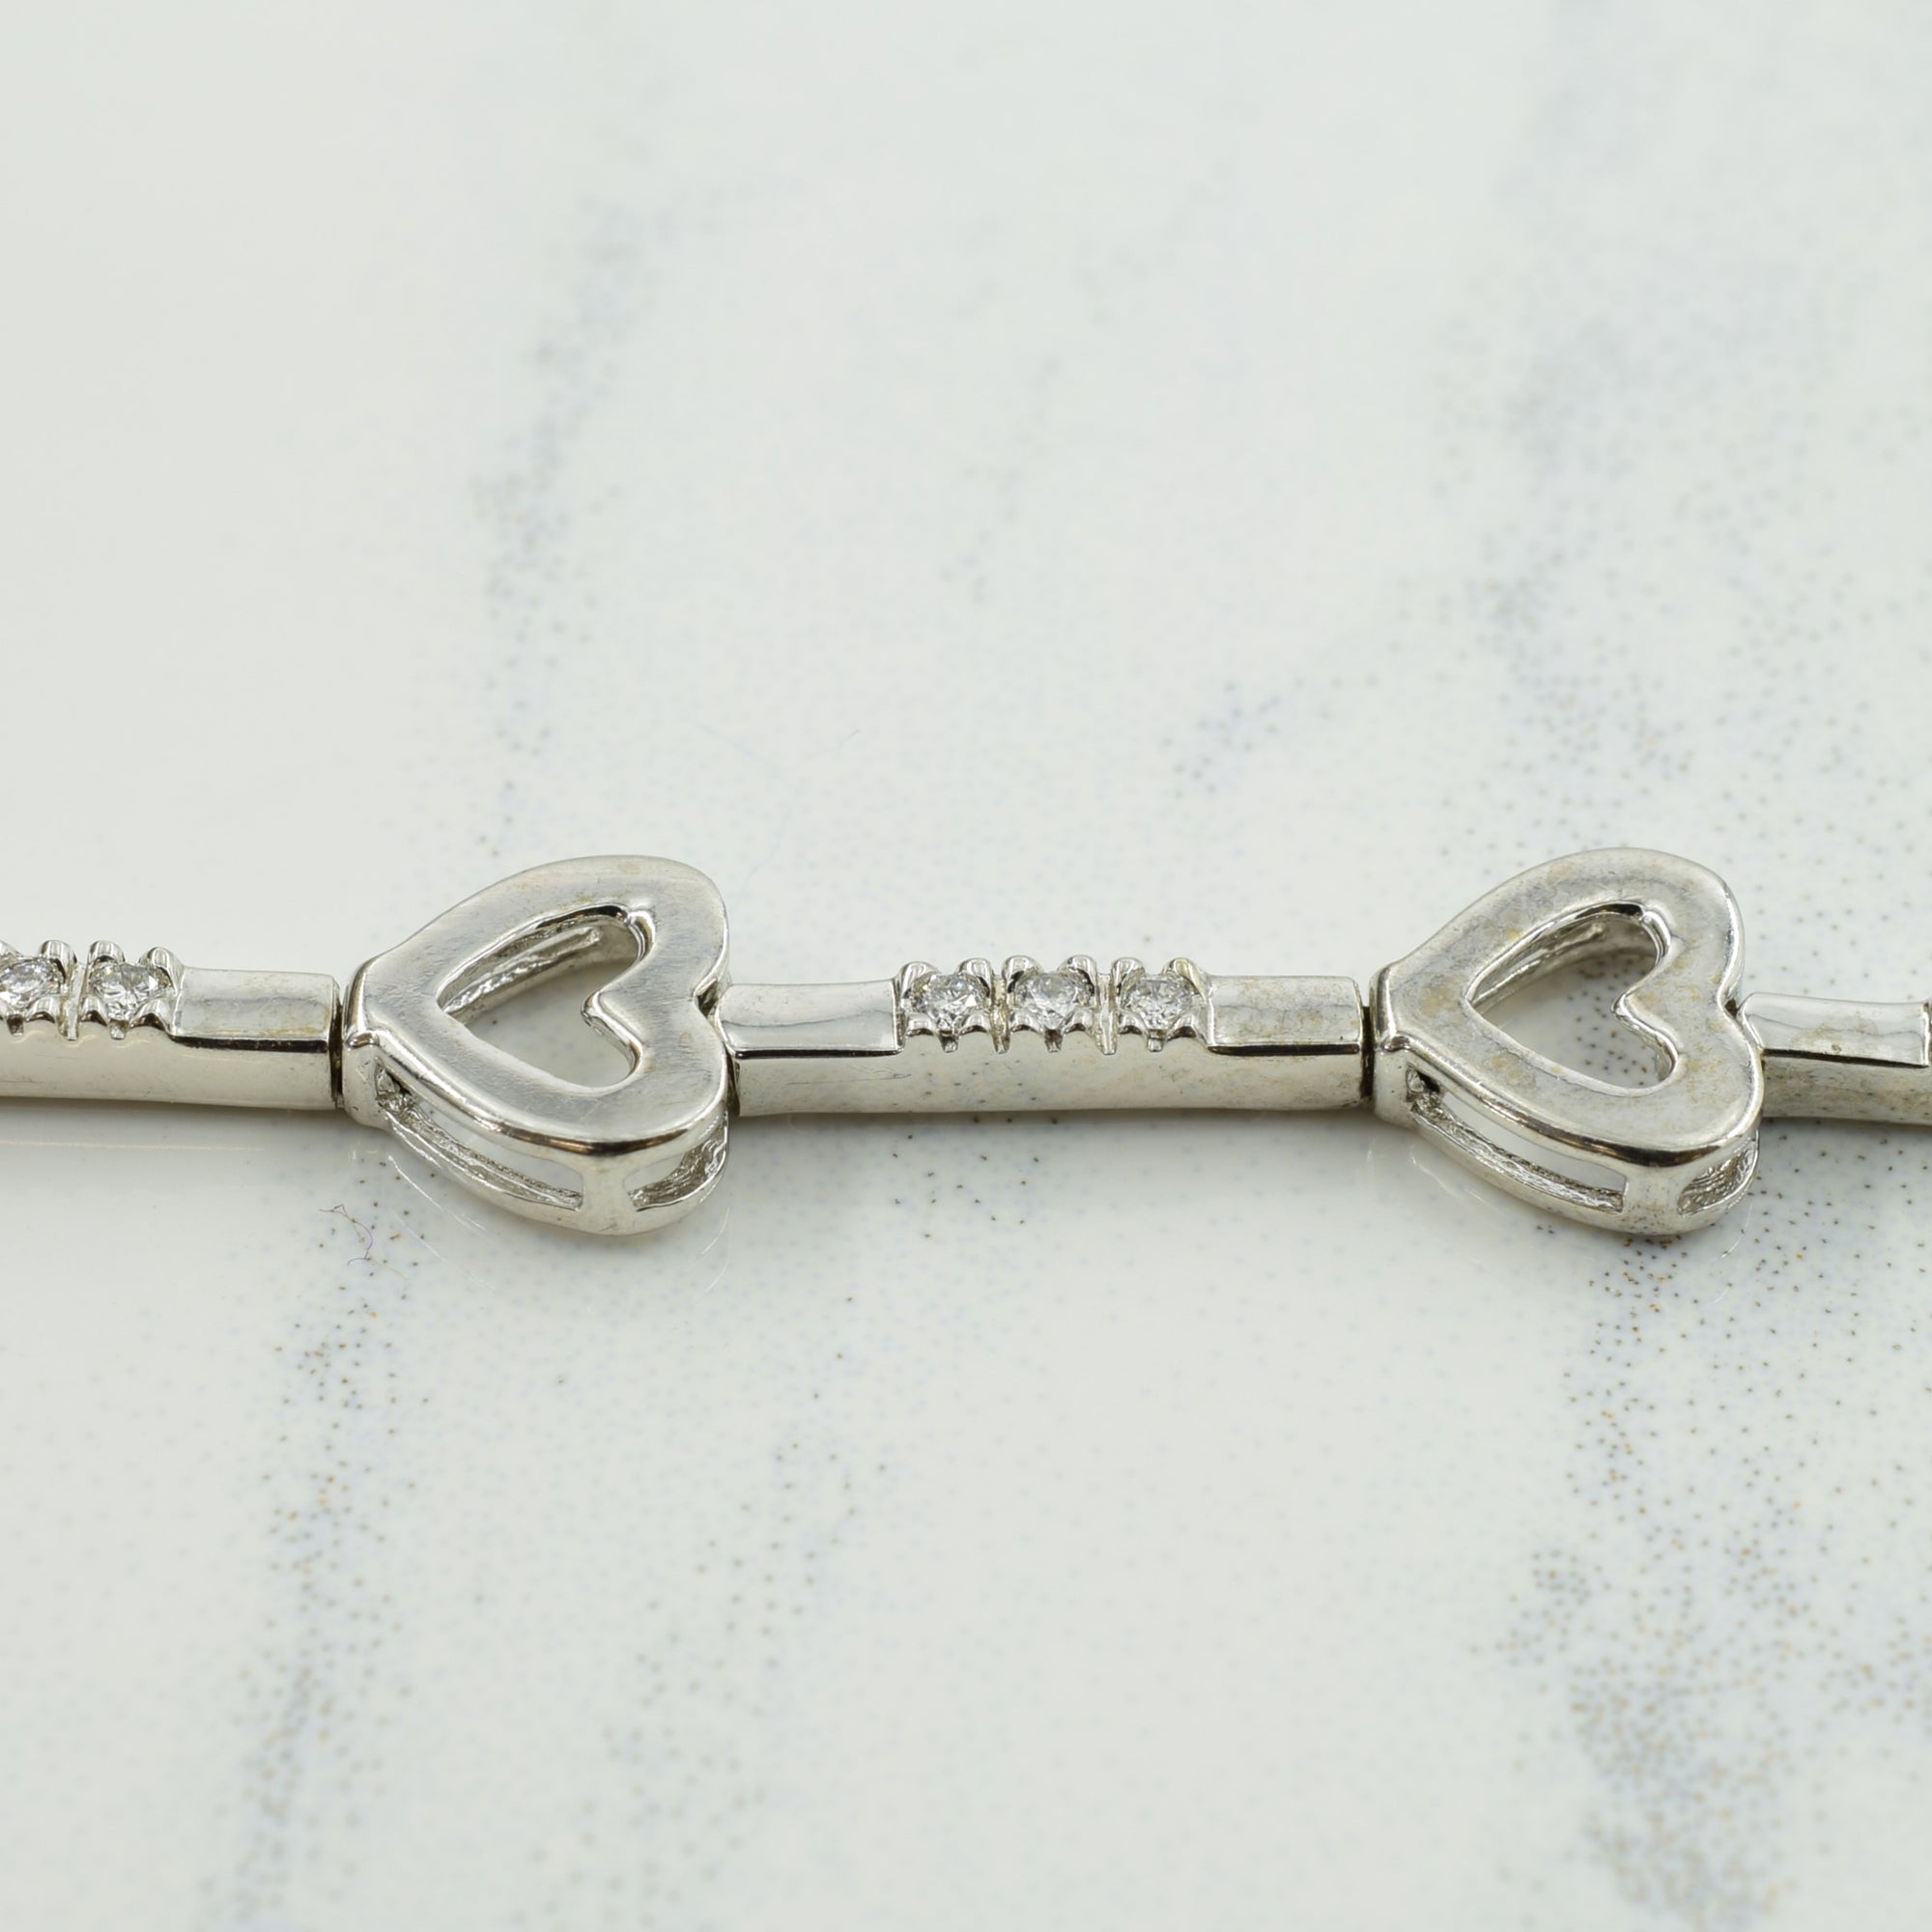 14k White Gold Diamond Heart Bracelet | 0.18ctw | 7